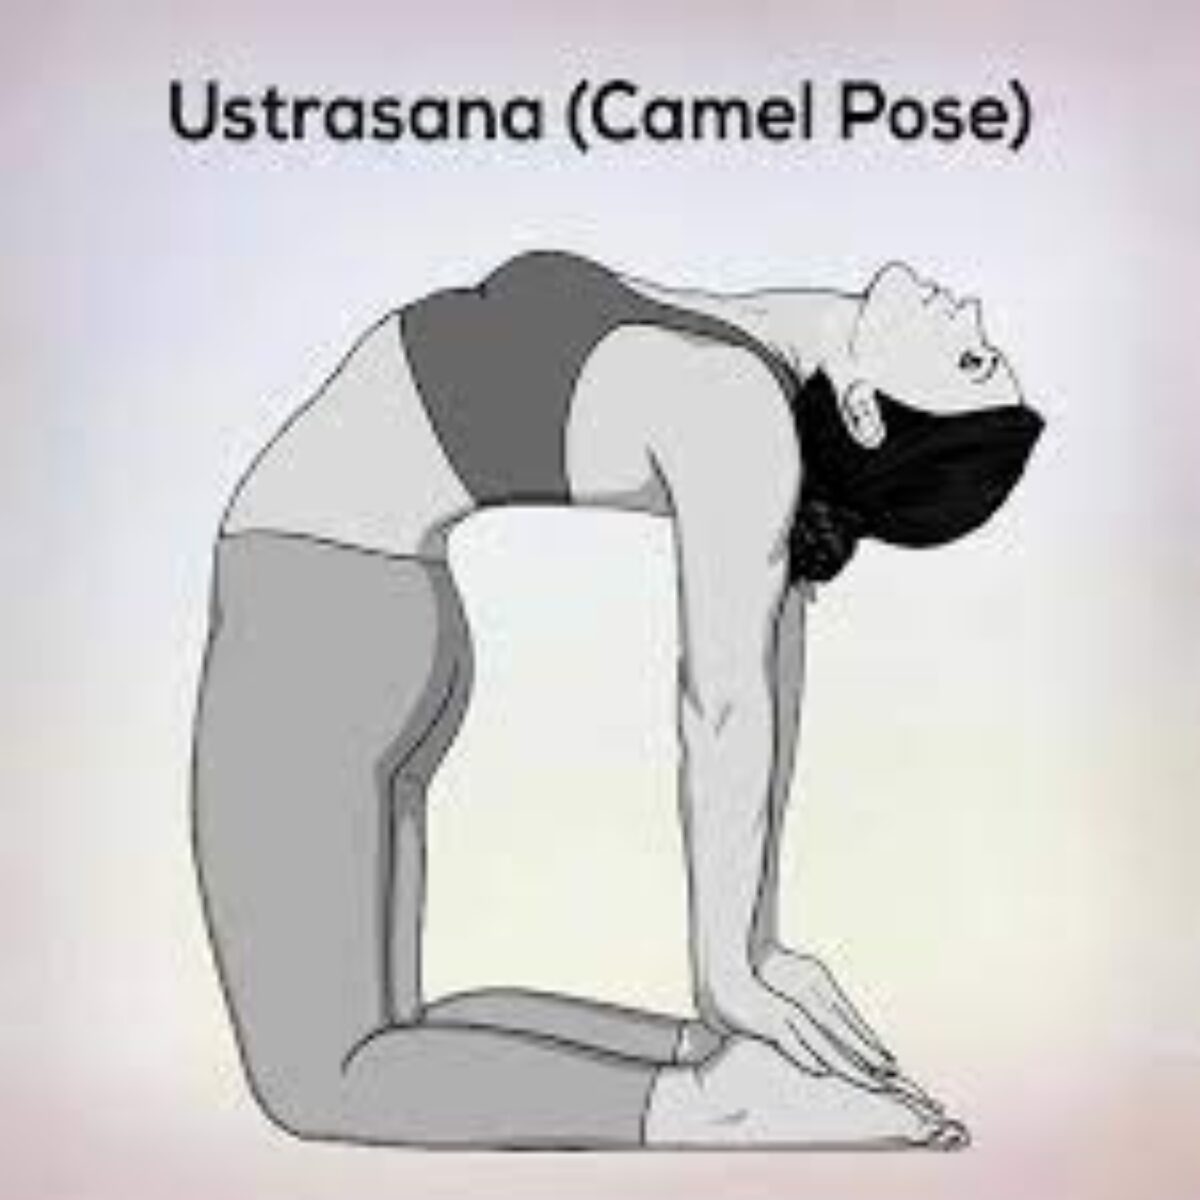 How to do Ustrasana - Camel Pose - YouTube